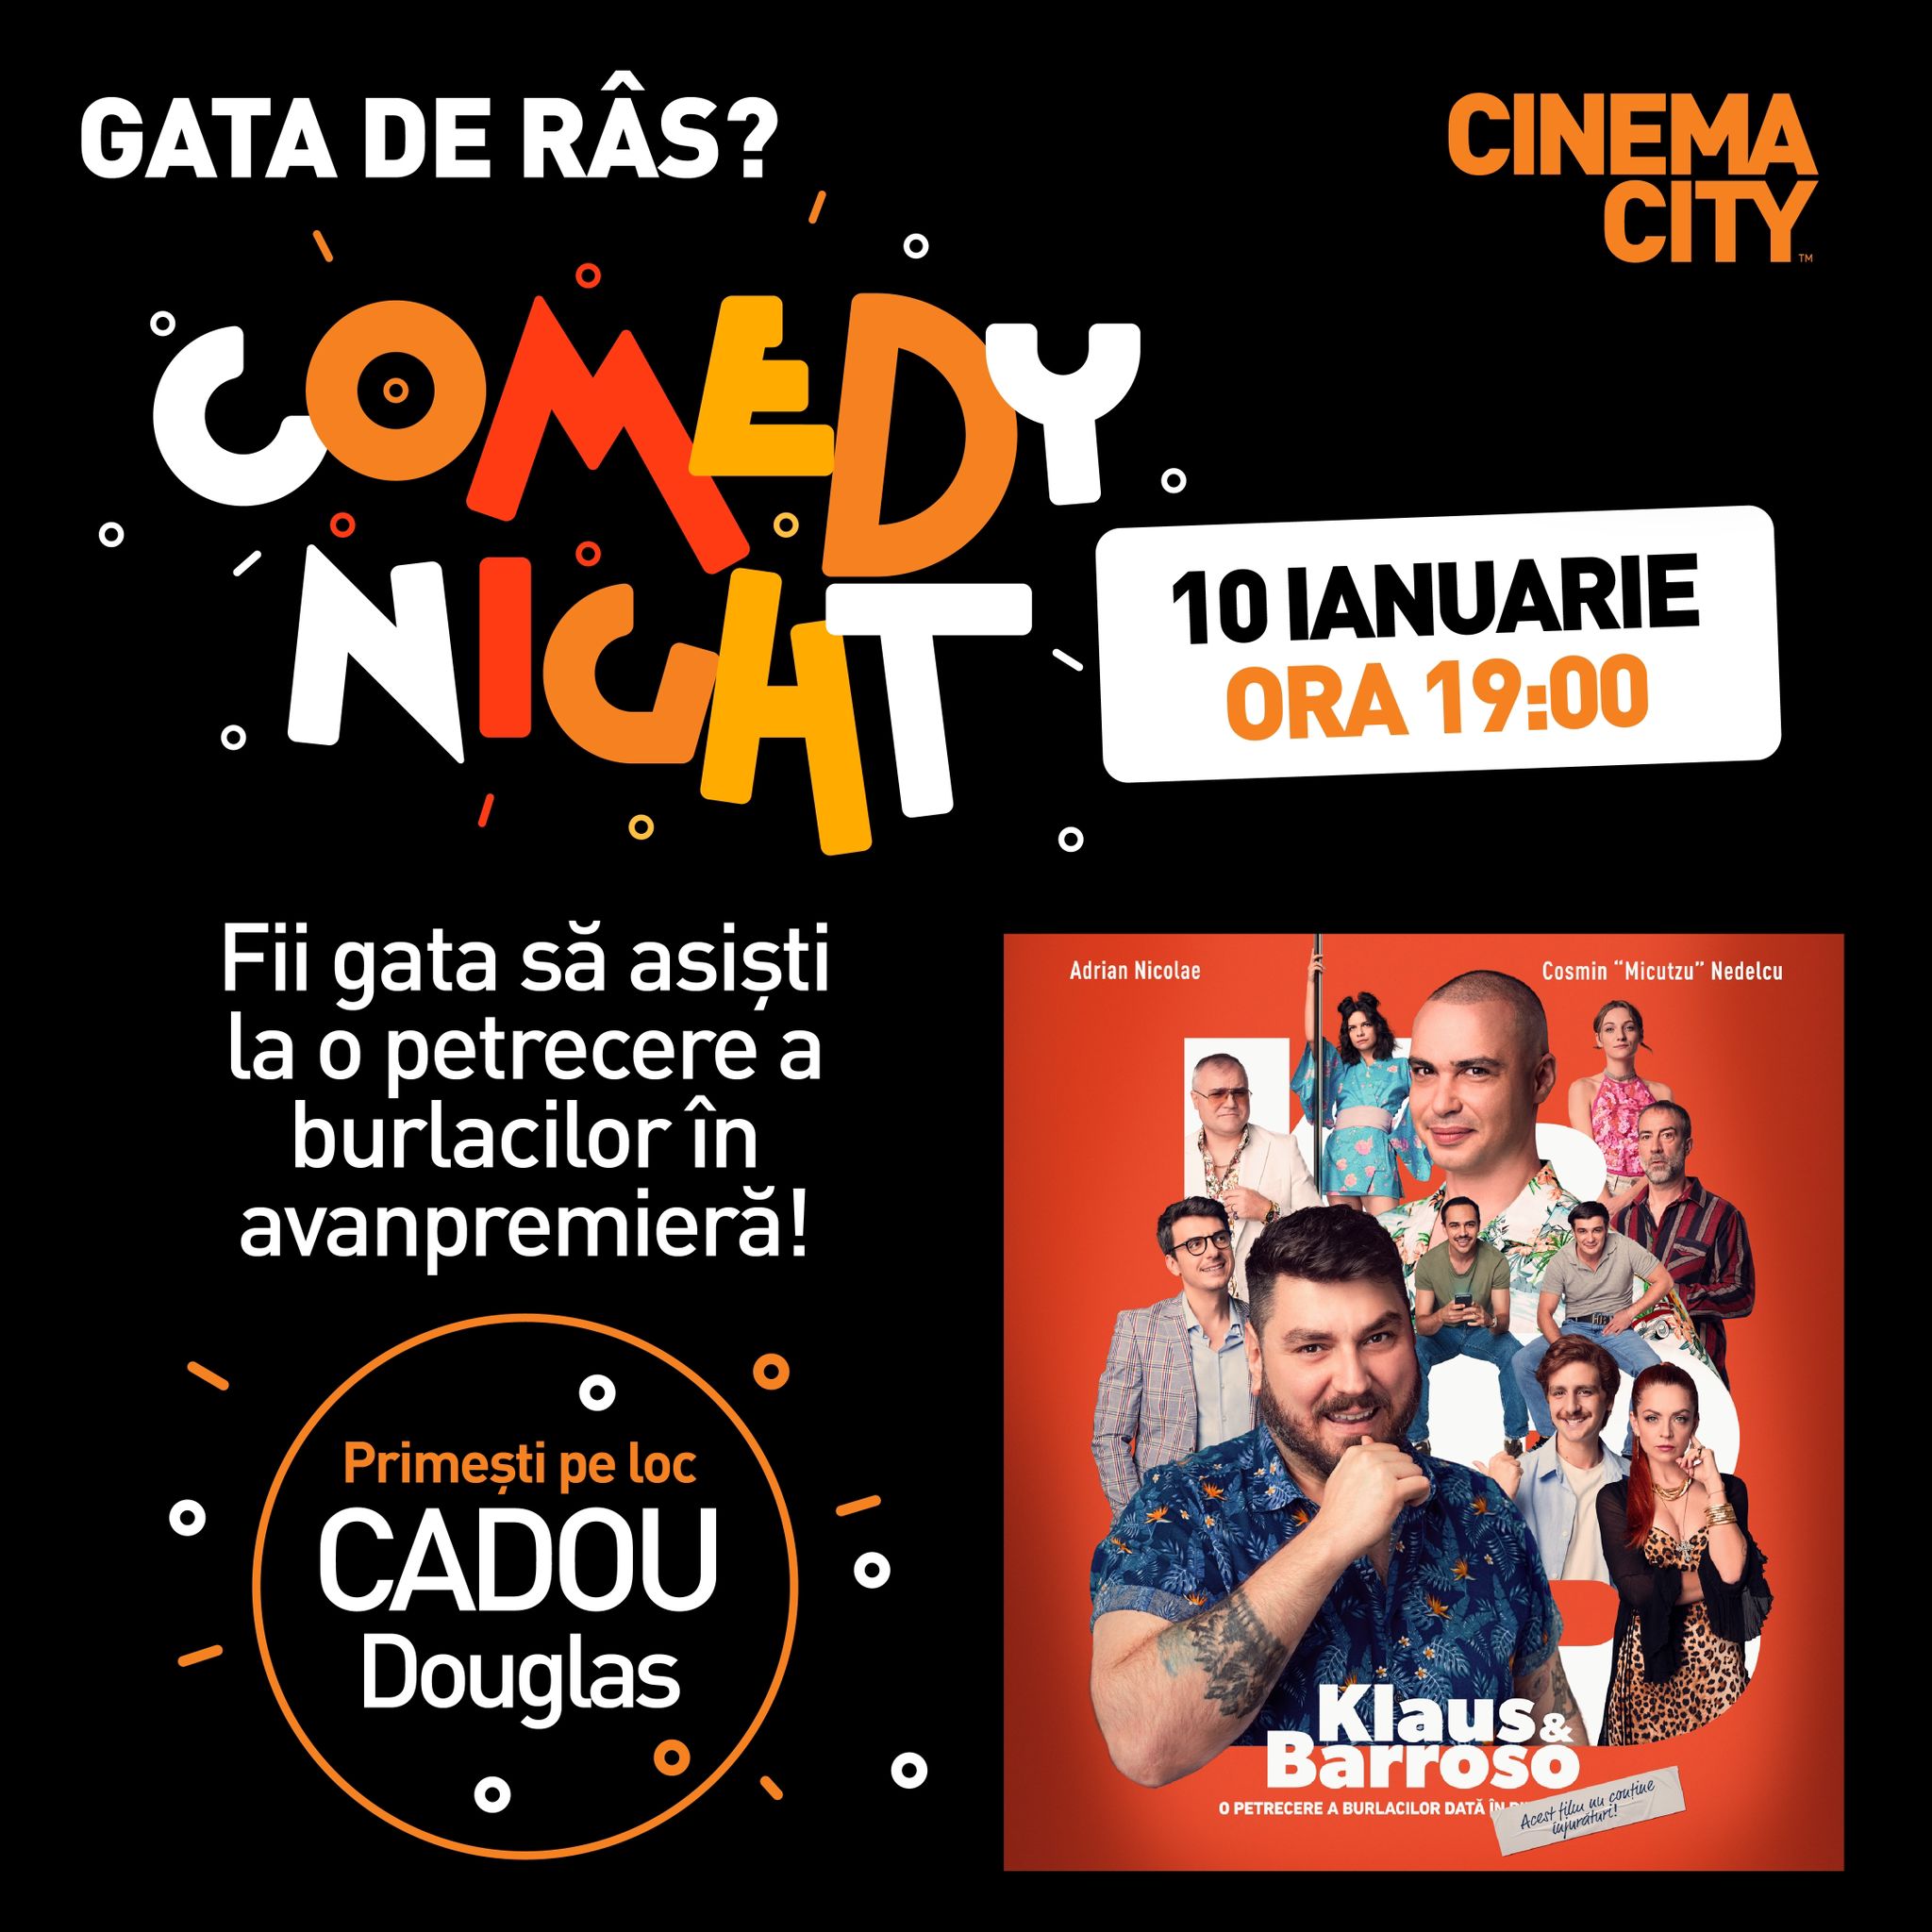 Comedy Night cu Klaus & Barroso: eveniment exclusiv în rețeaua Cinema City pe 10 ianuarie!